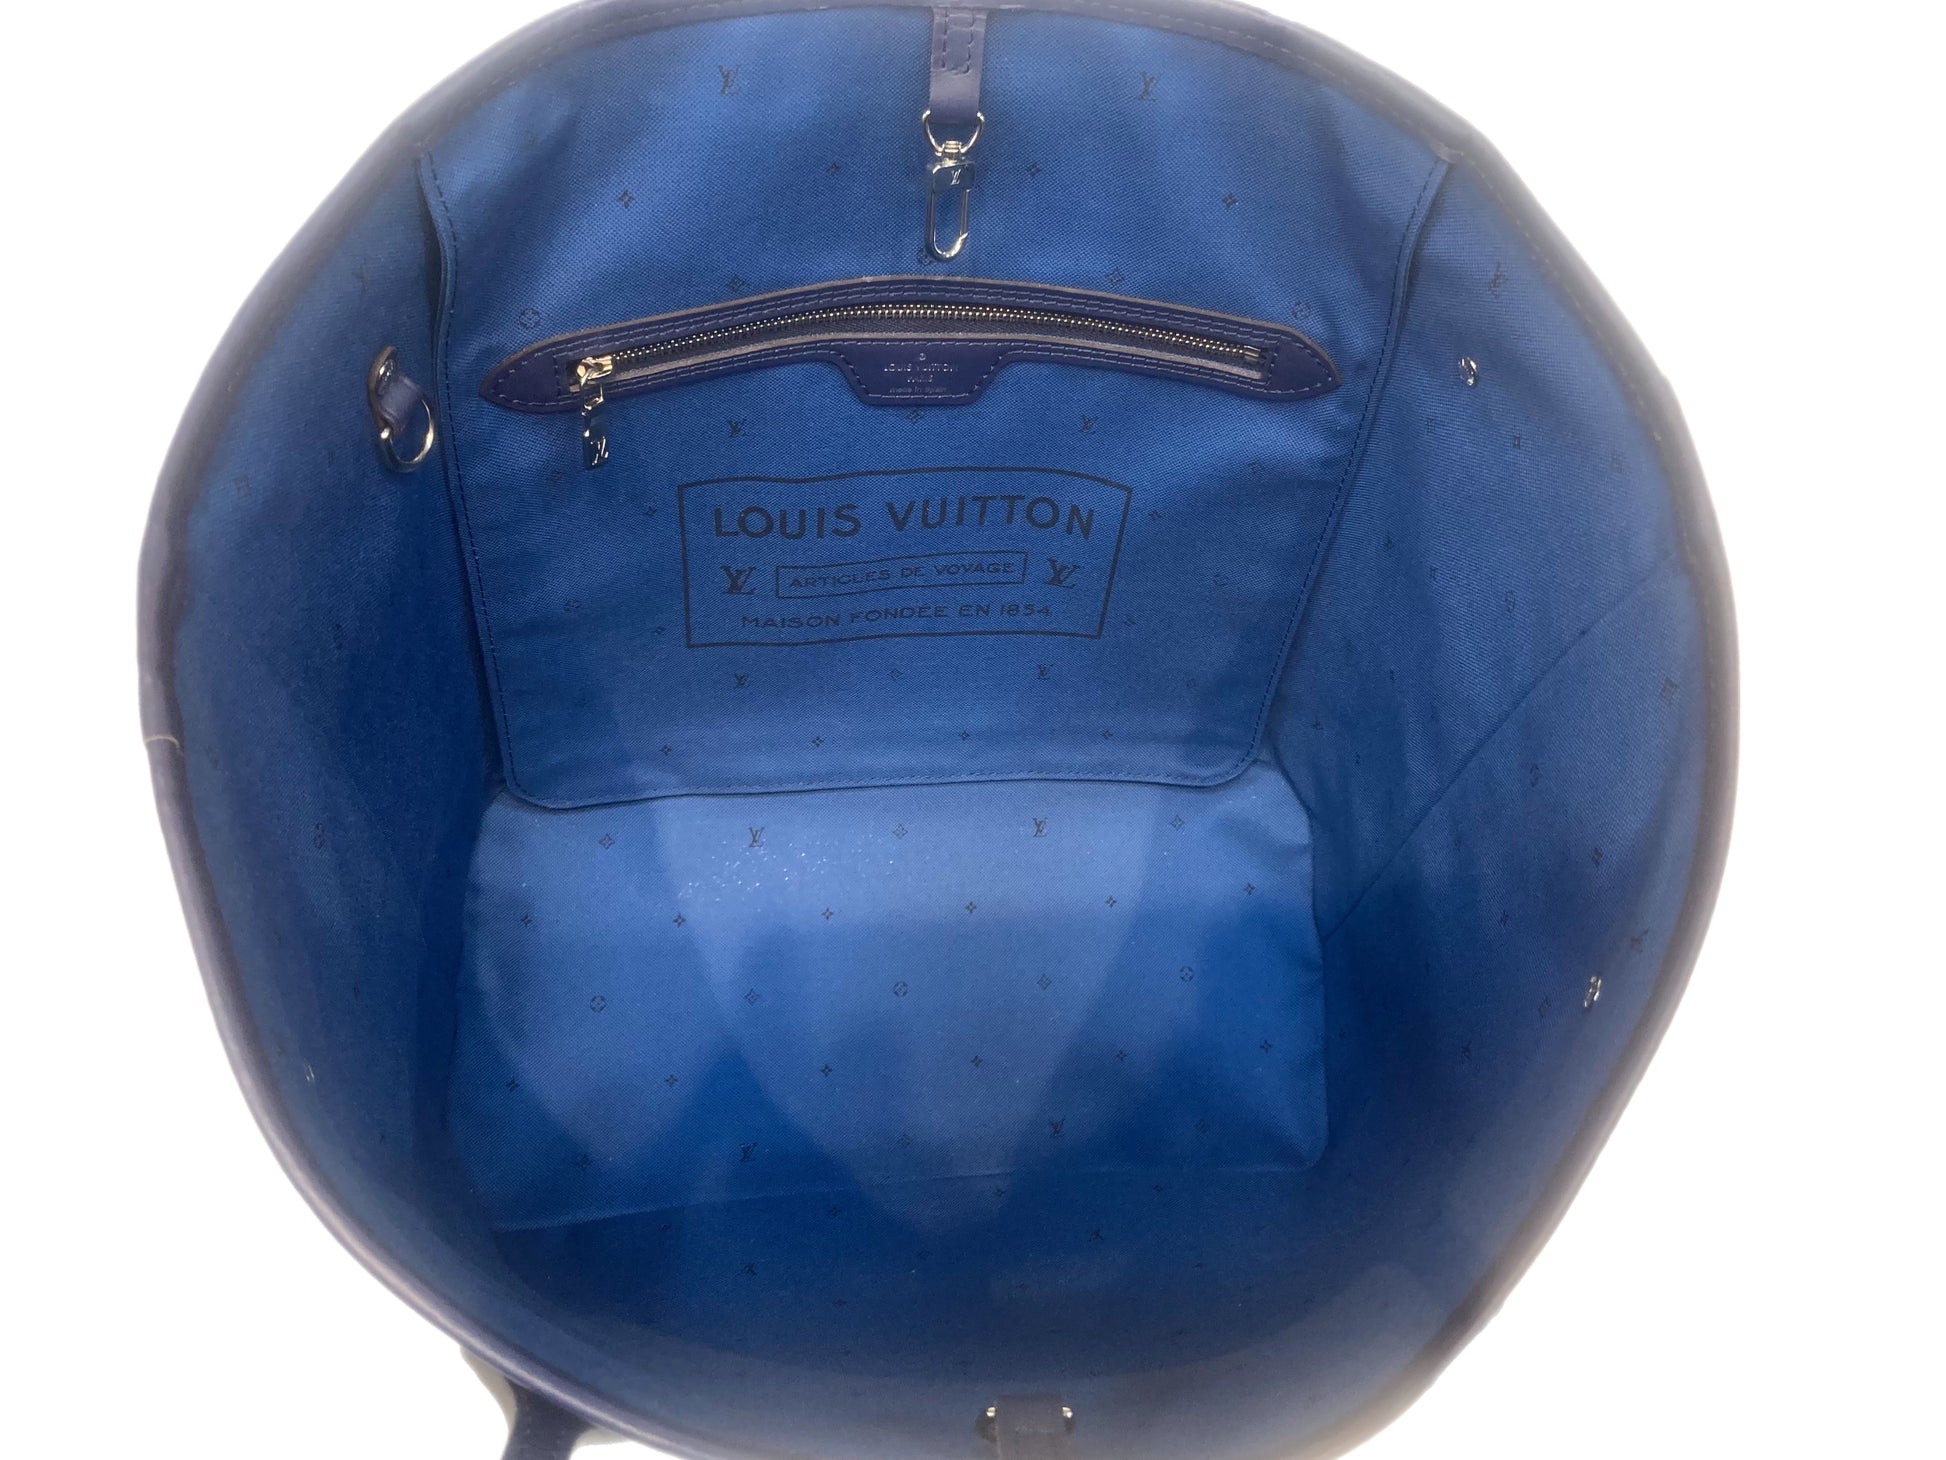 Louis Vuitton Articles DE Voyage Maison Fondee EN 1854 for Sale